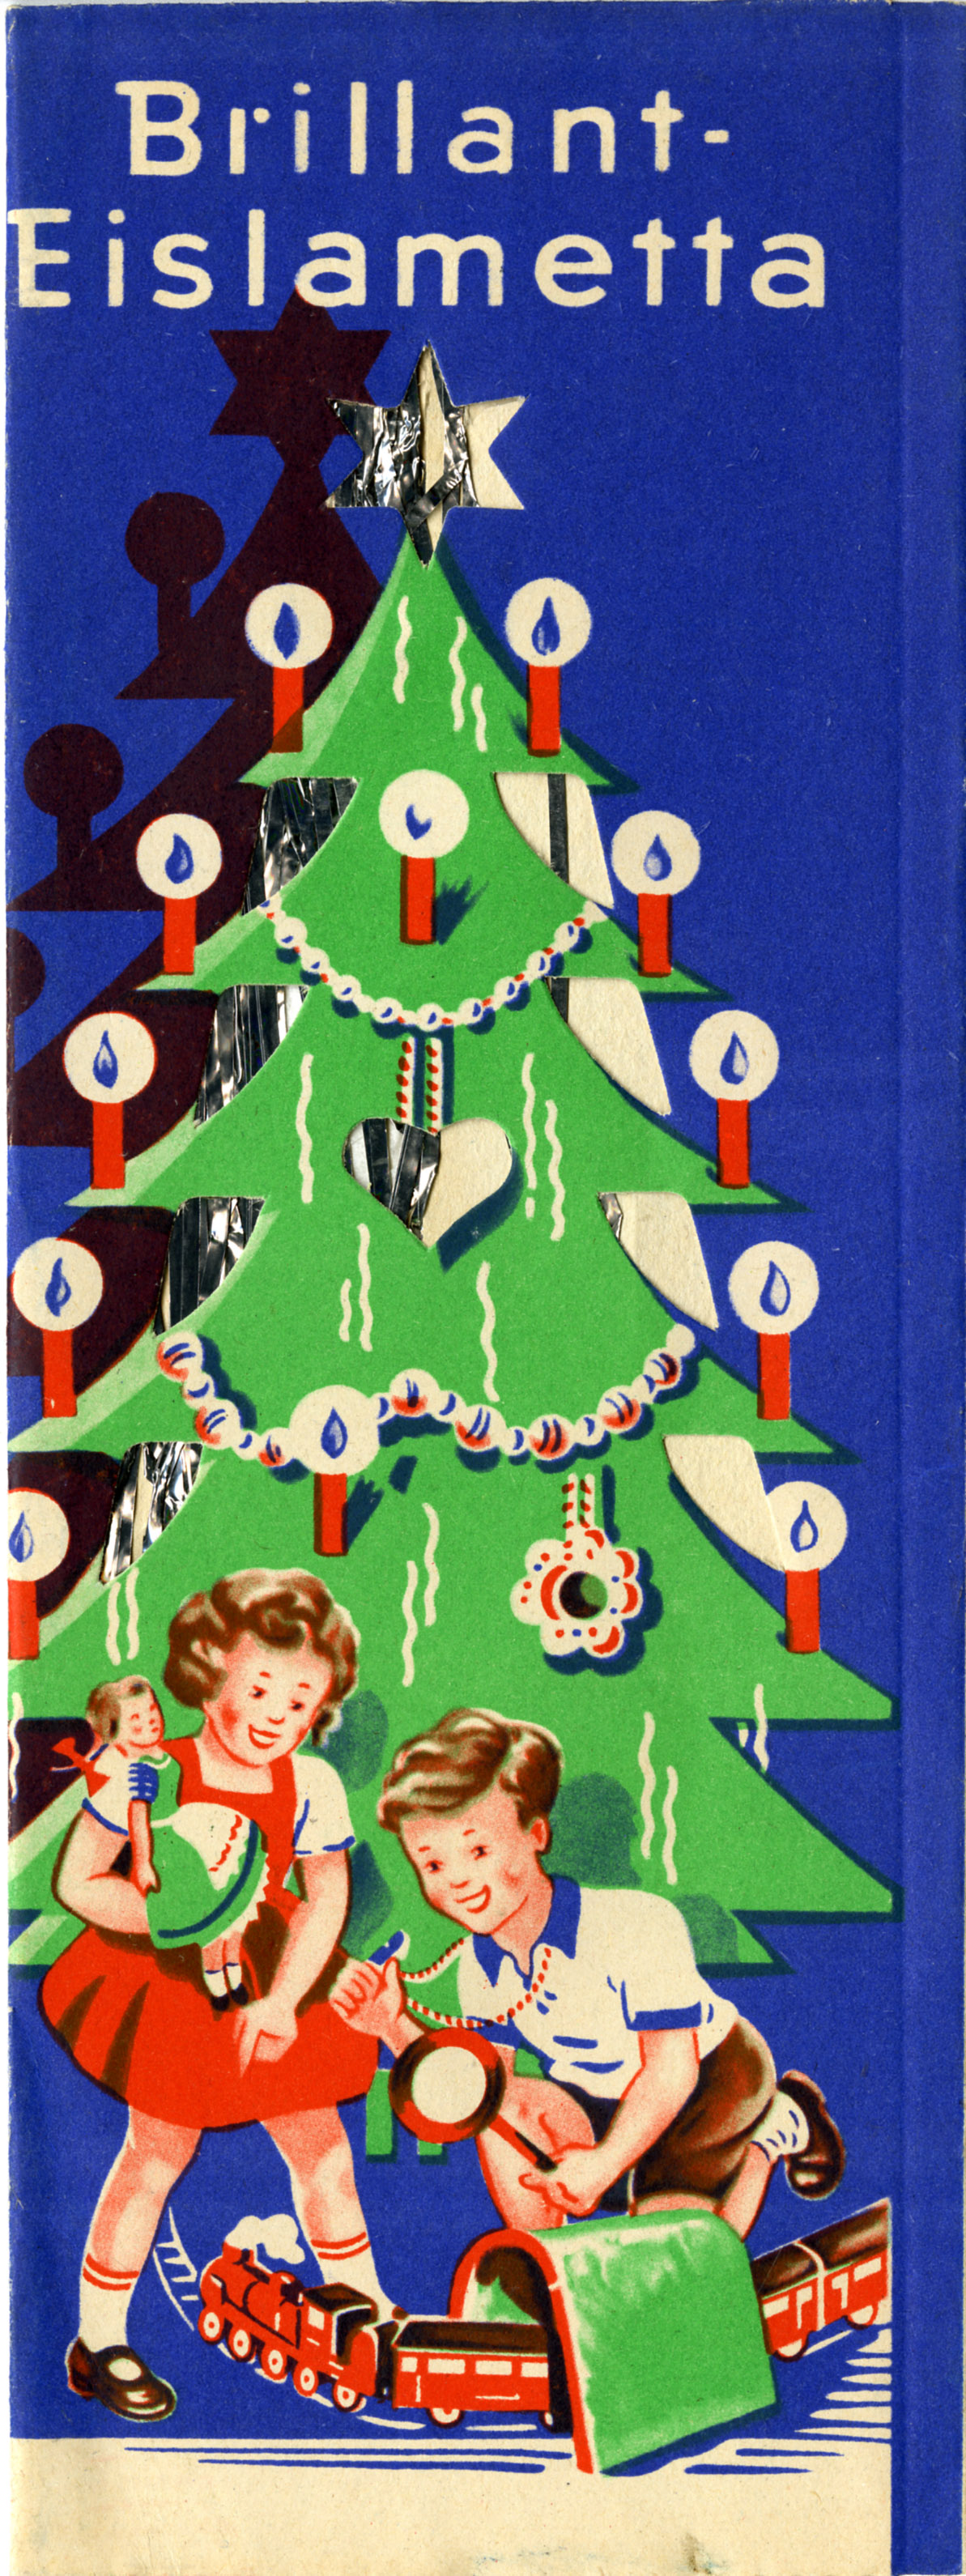 Werbung für Brillant-Eislametta der Firma Riffelmacher & Weinberger, um 1950